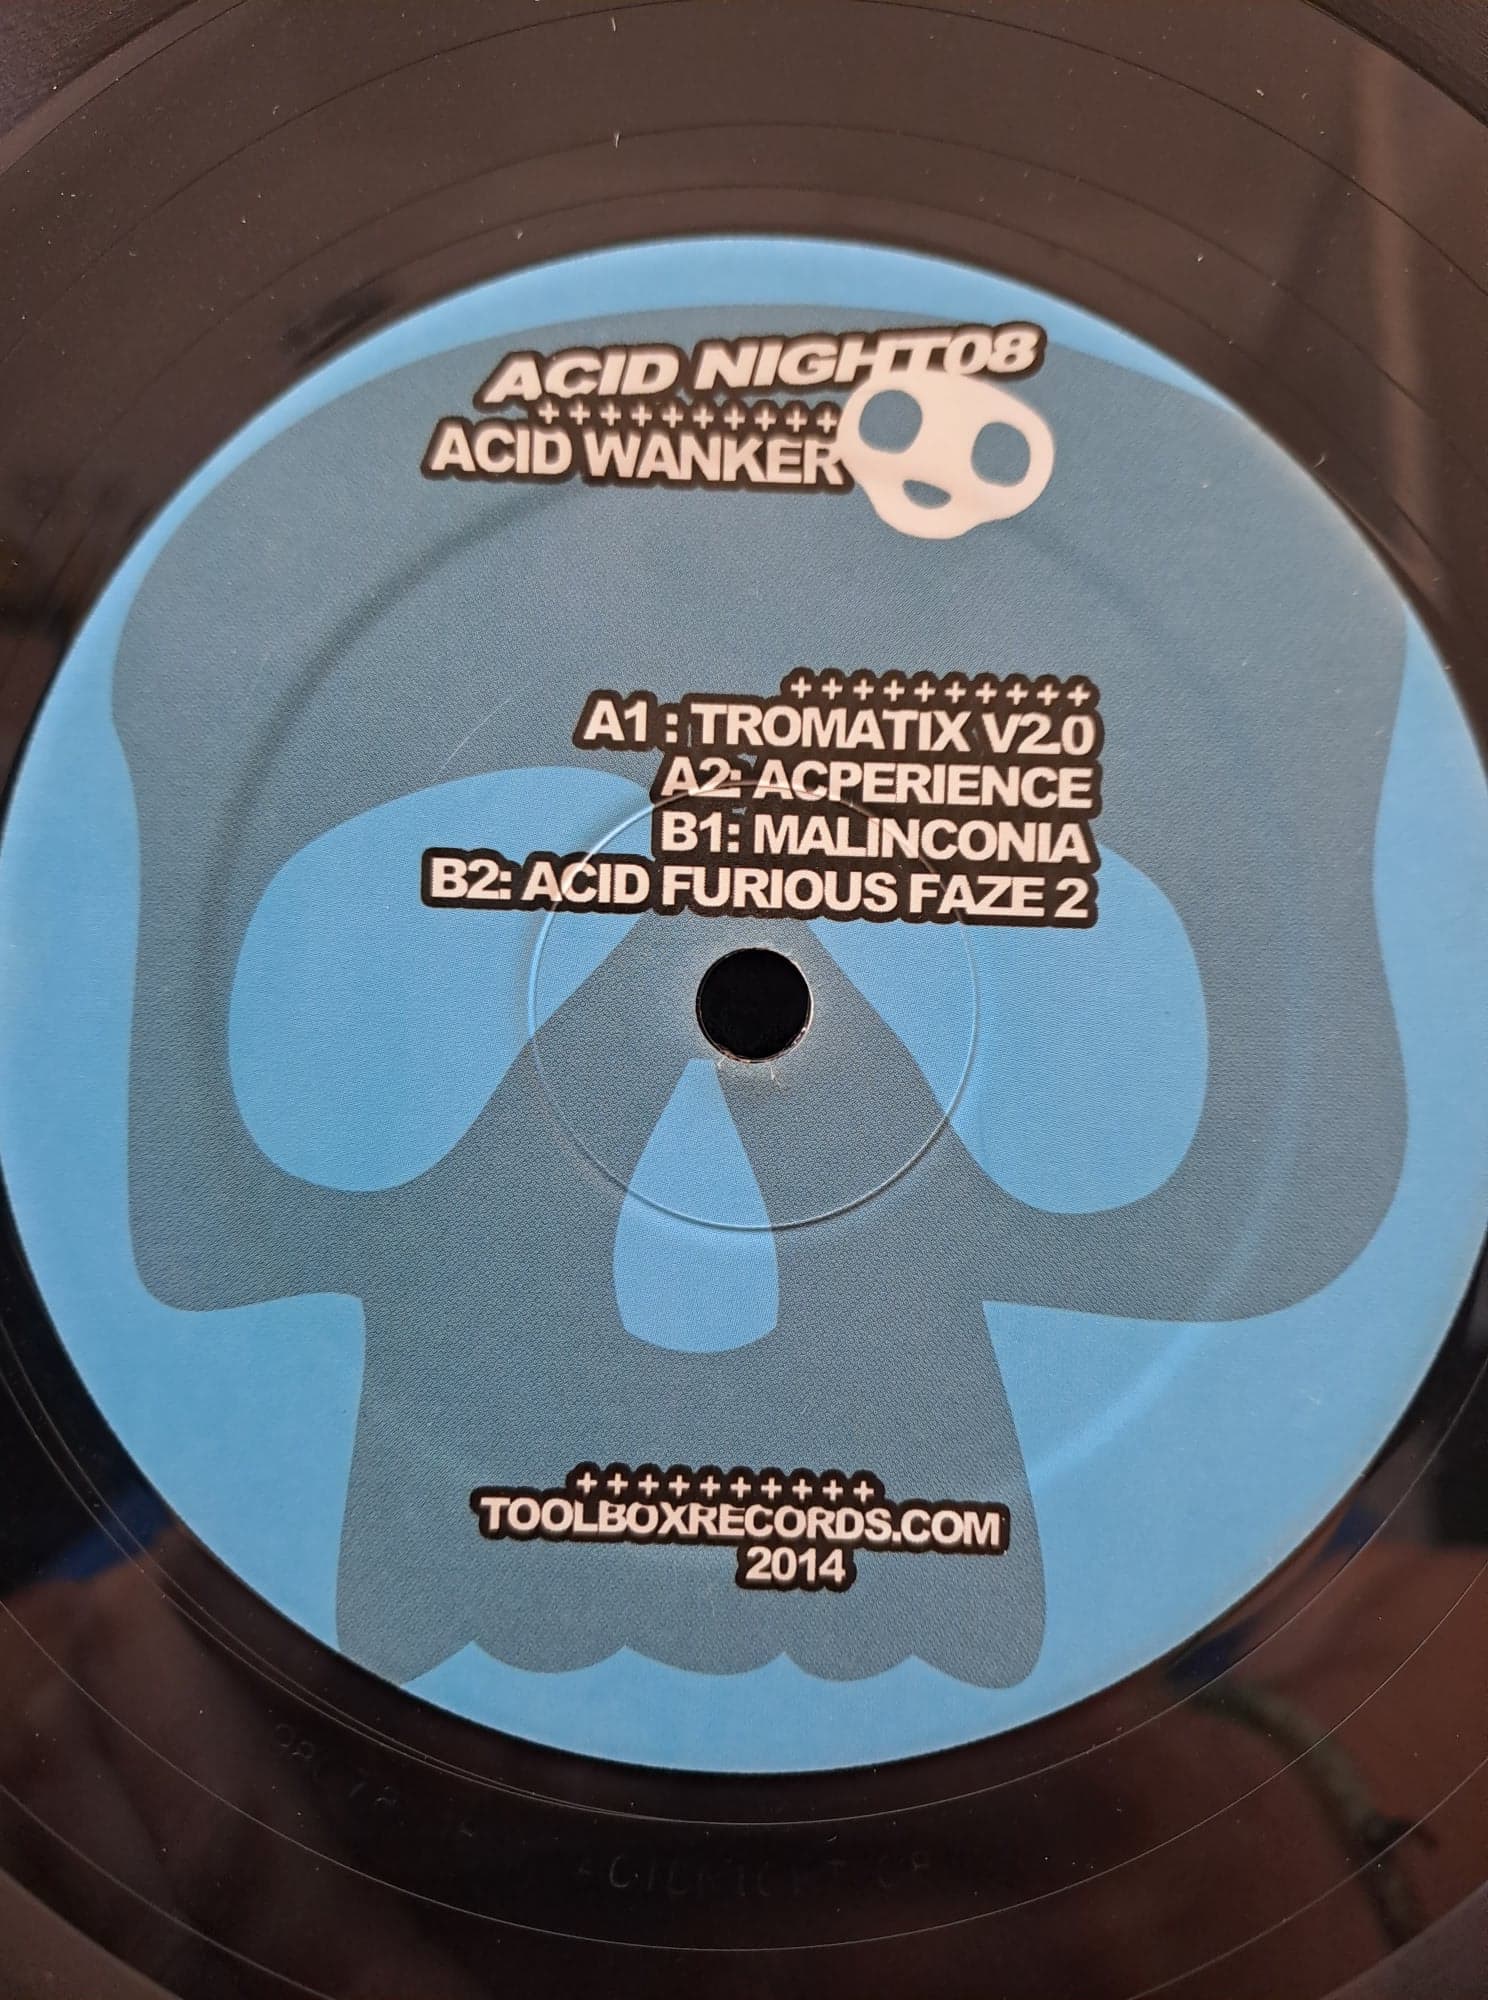 Acid Night 08 - vinyle ambient